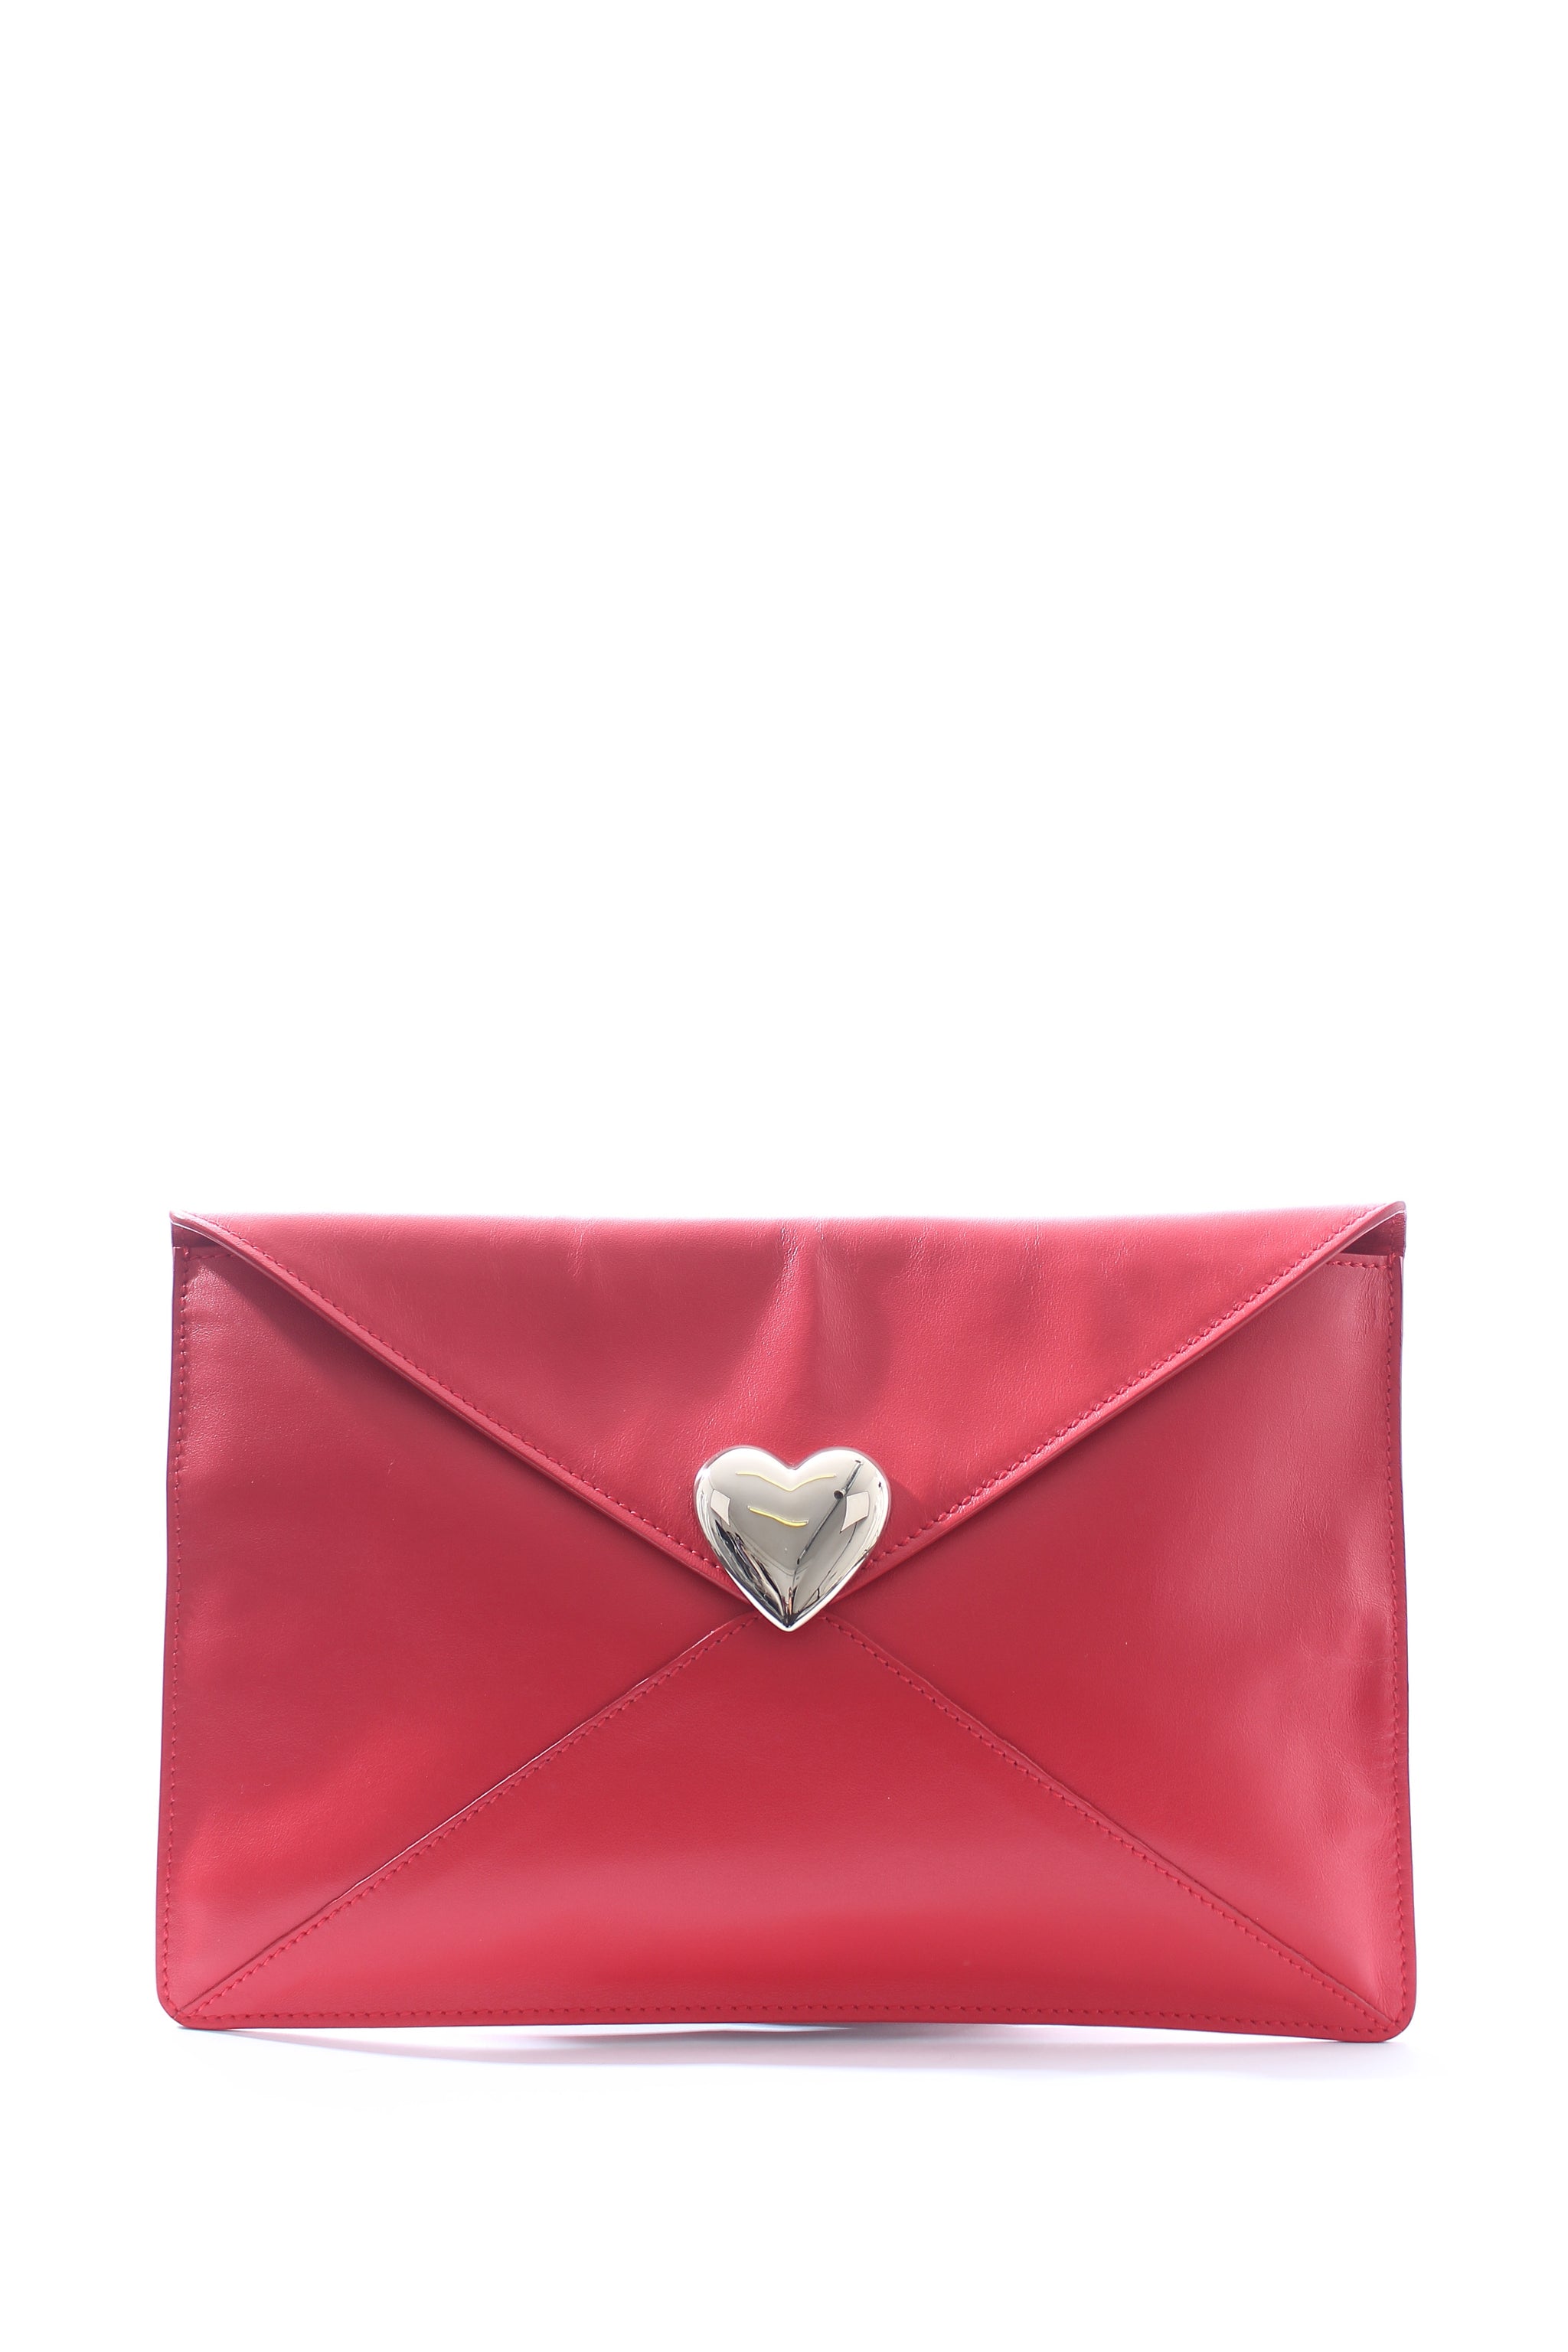 Valentino Bags VANCOUVER - Handbag - rosso/red - Zalando.de